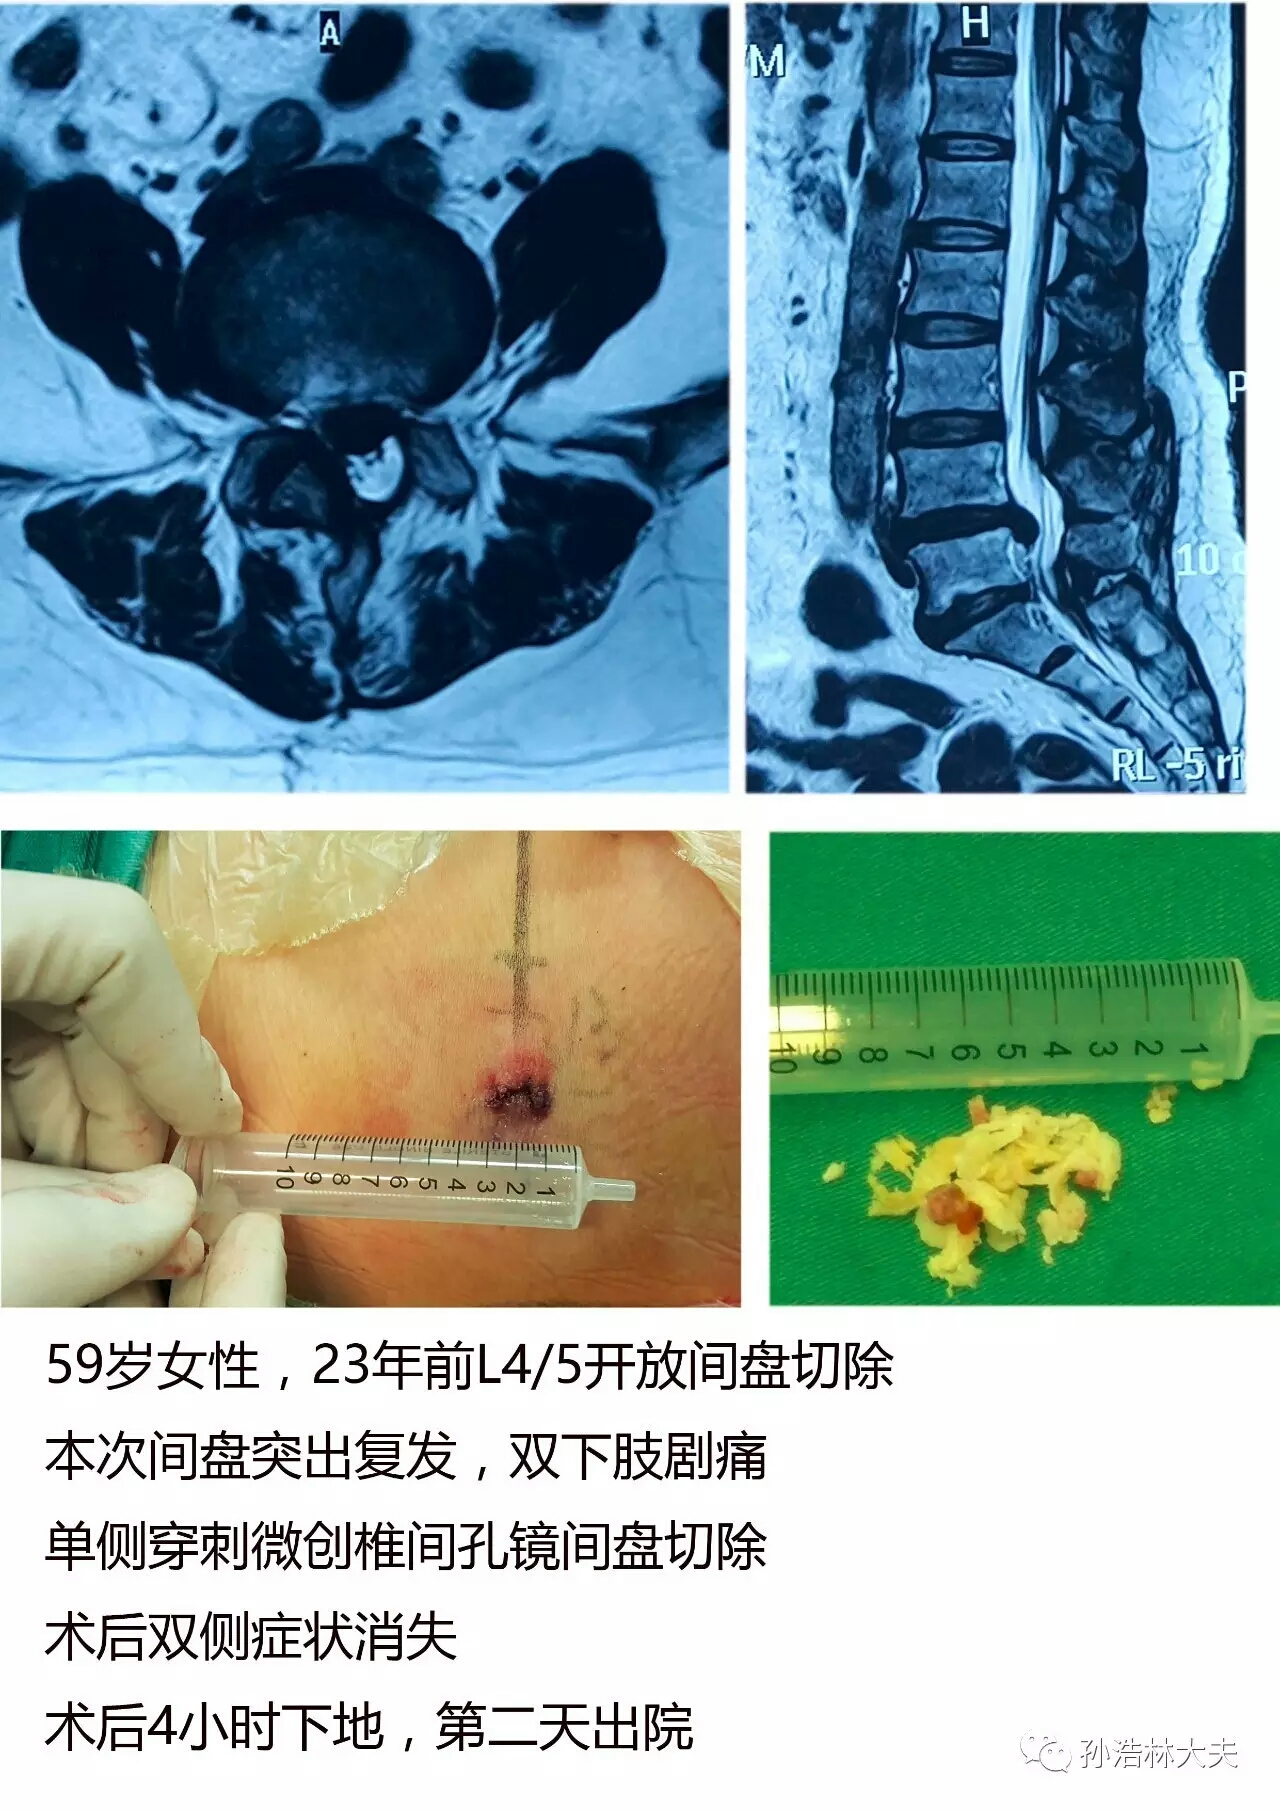 病例五,腰椎间盘突出症开放术后复发微创手术病例